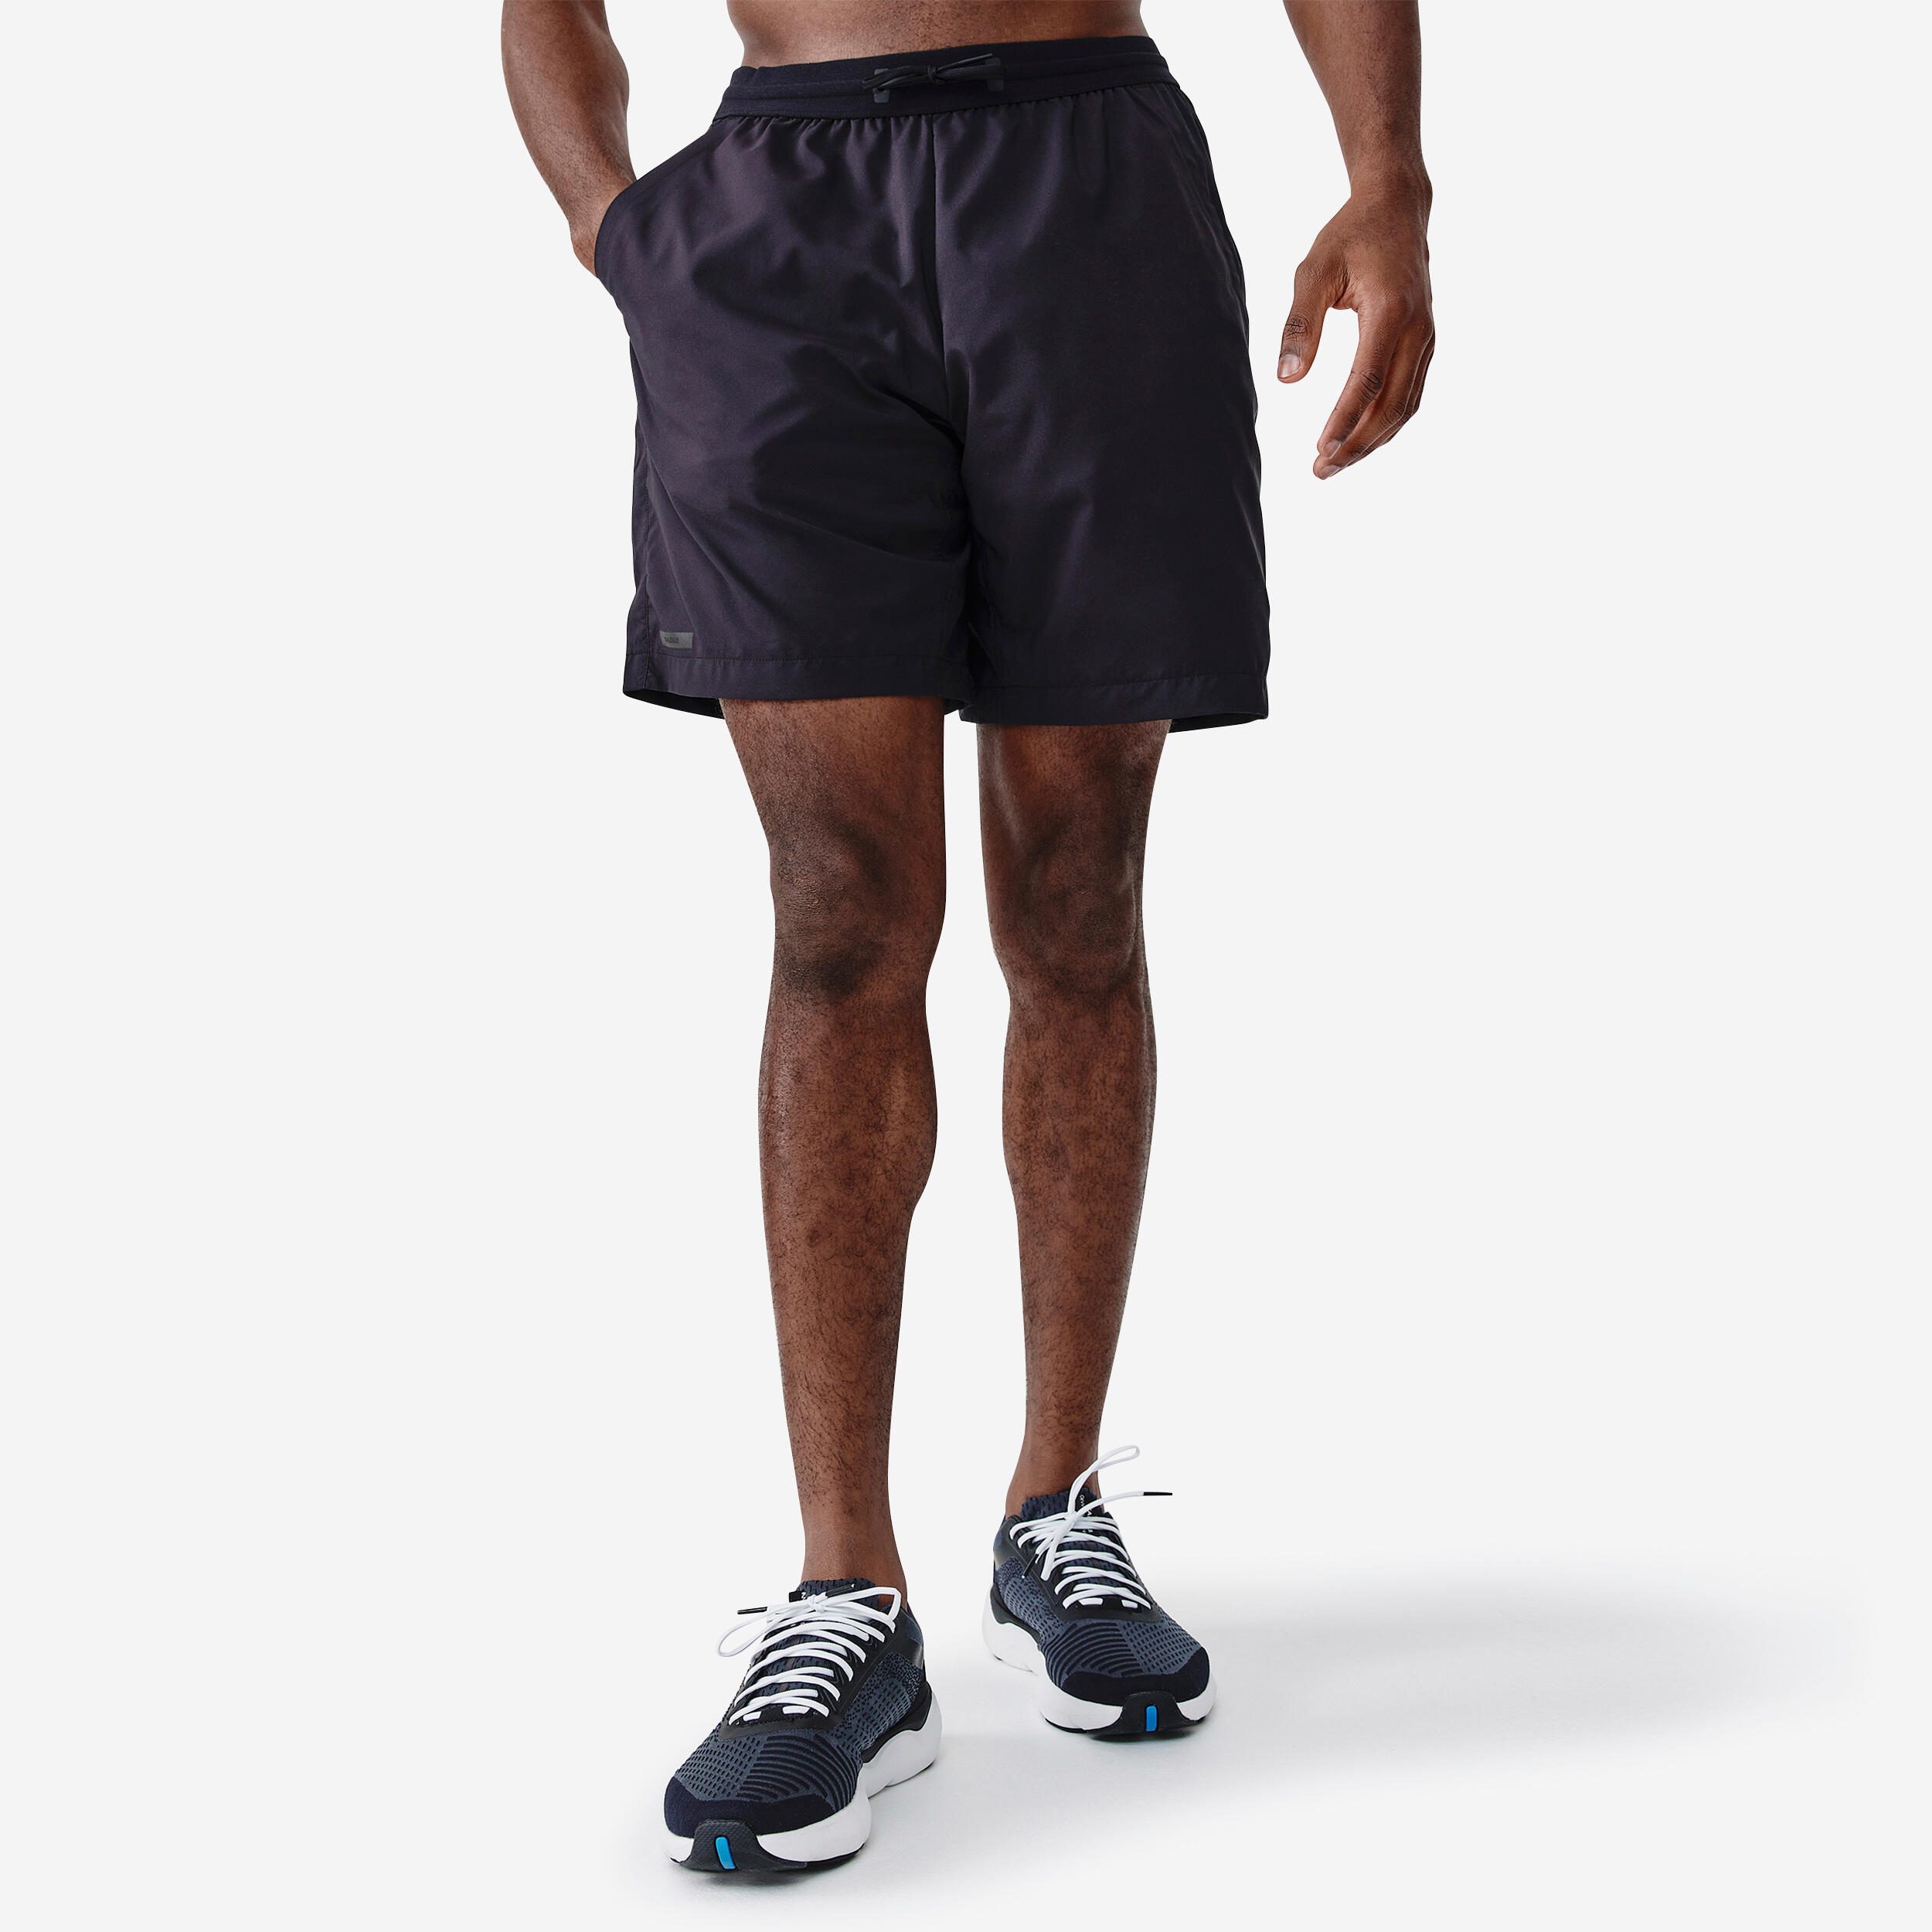 KIPRUN Men's Running Breathable Shorts Dry+ - Black